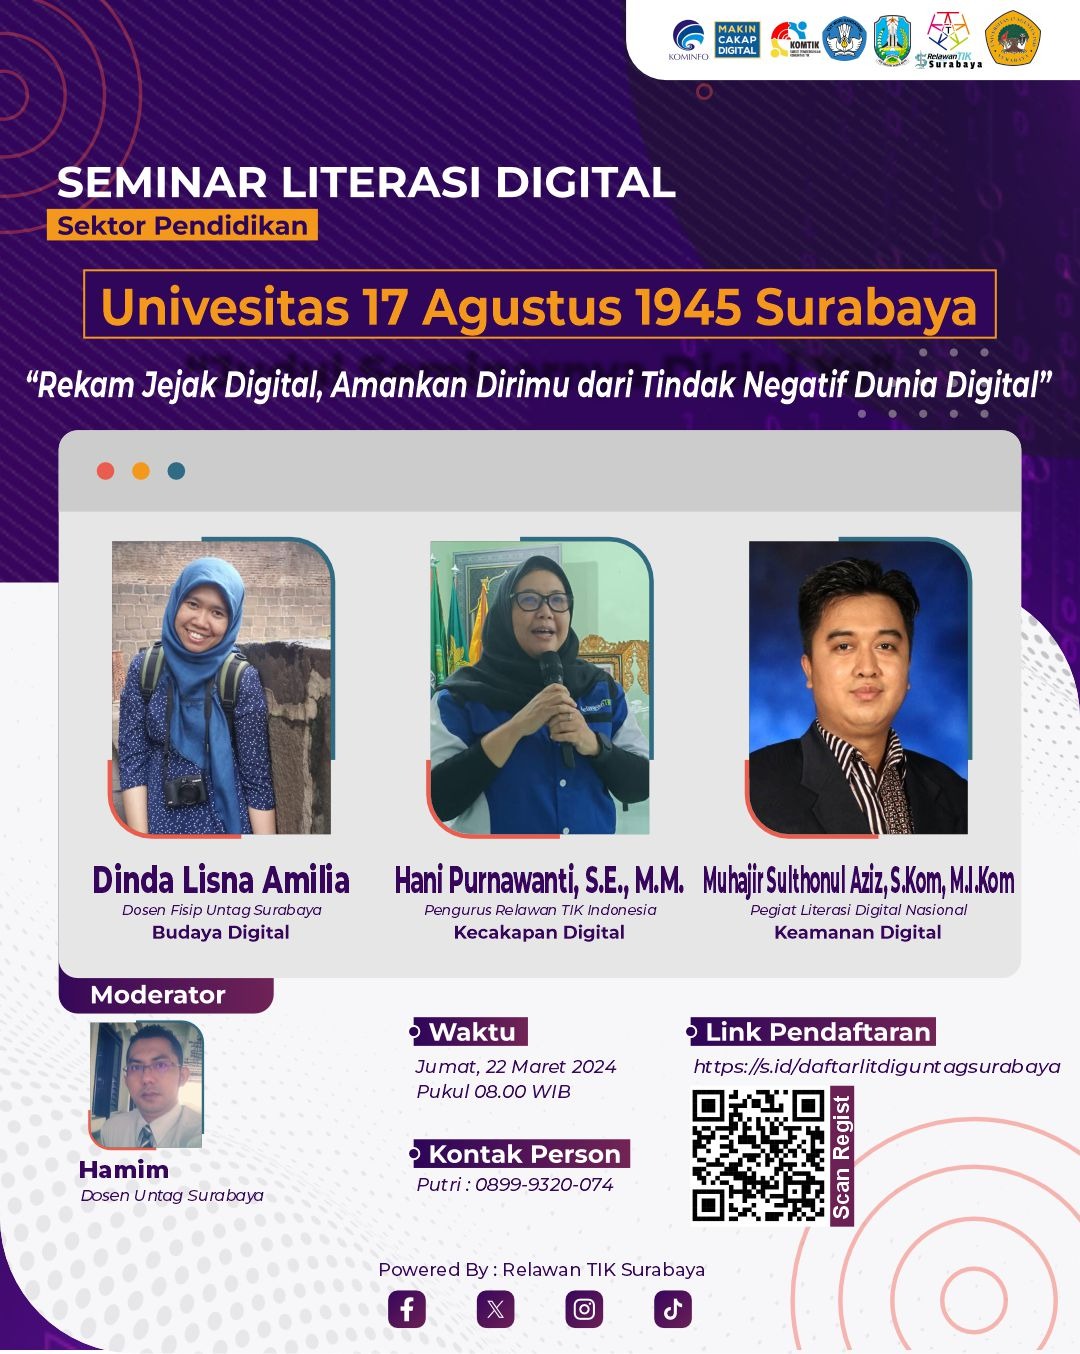 Seminar Literasi Digital 